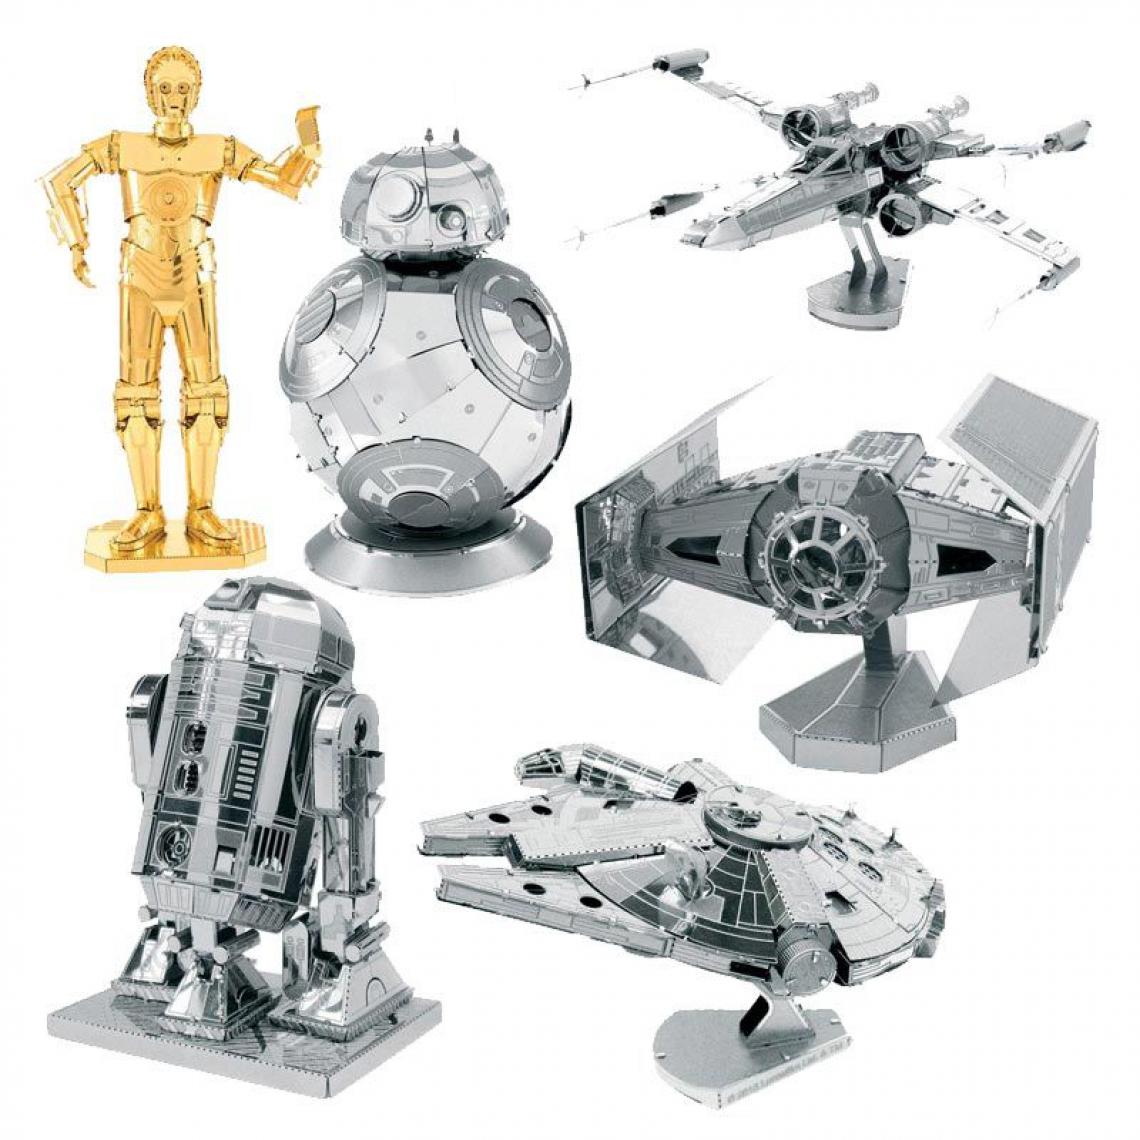 Graines Creatives - 6 maquettes métalliques 3D Star Wars - Objets déco